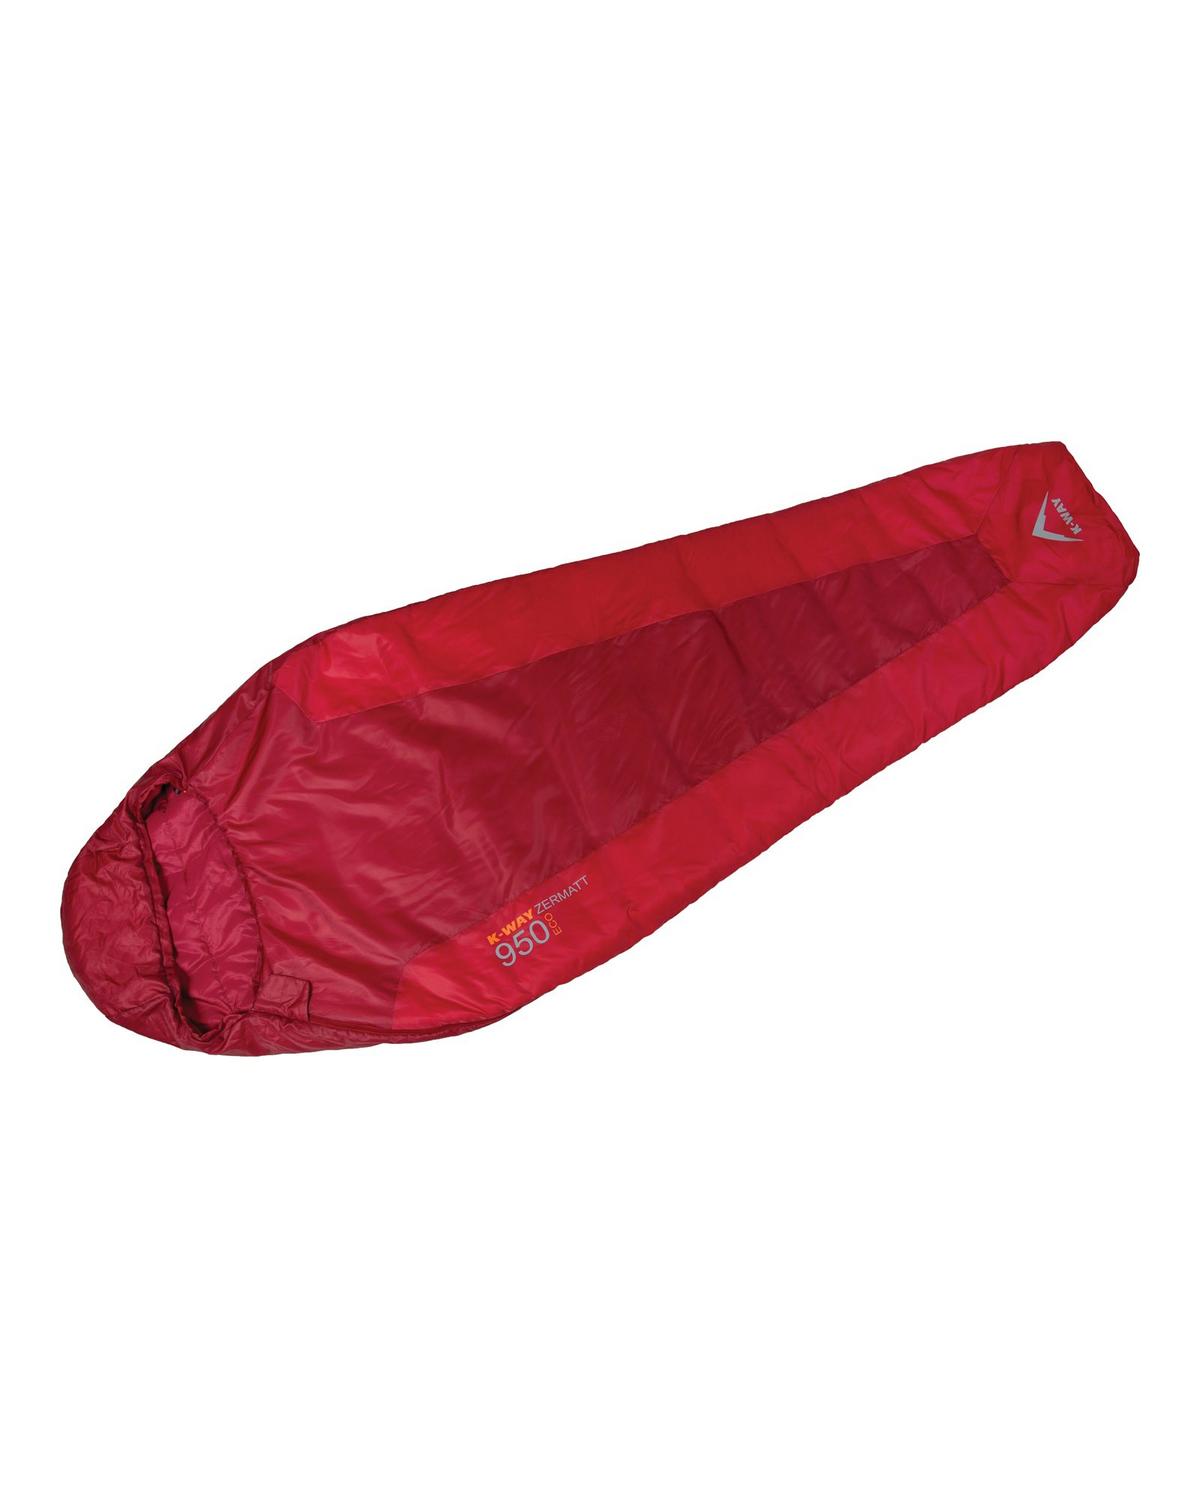 K-Way Draken 1250 Eco Sleeping Bag -  Red/Red